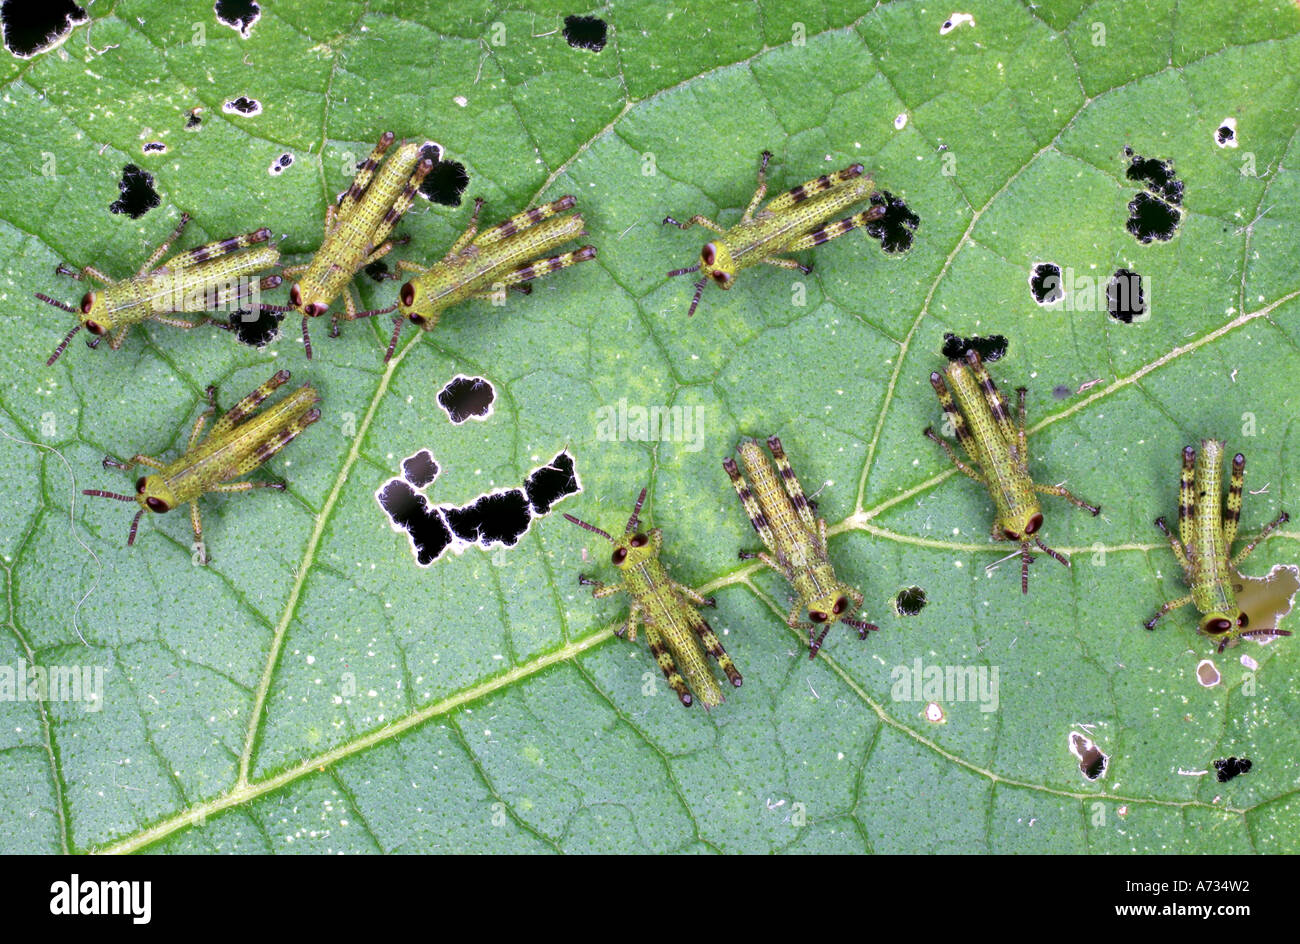 Nine Giant Grasshopper Nymphs or Instars,Valanga irregularis Stock Photo